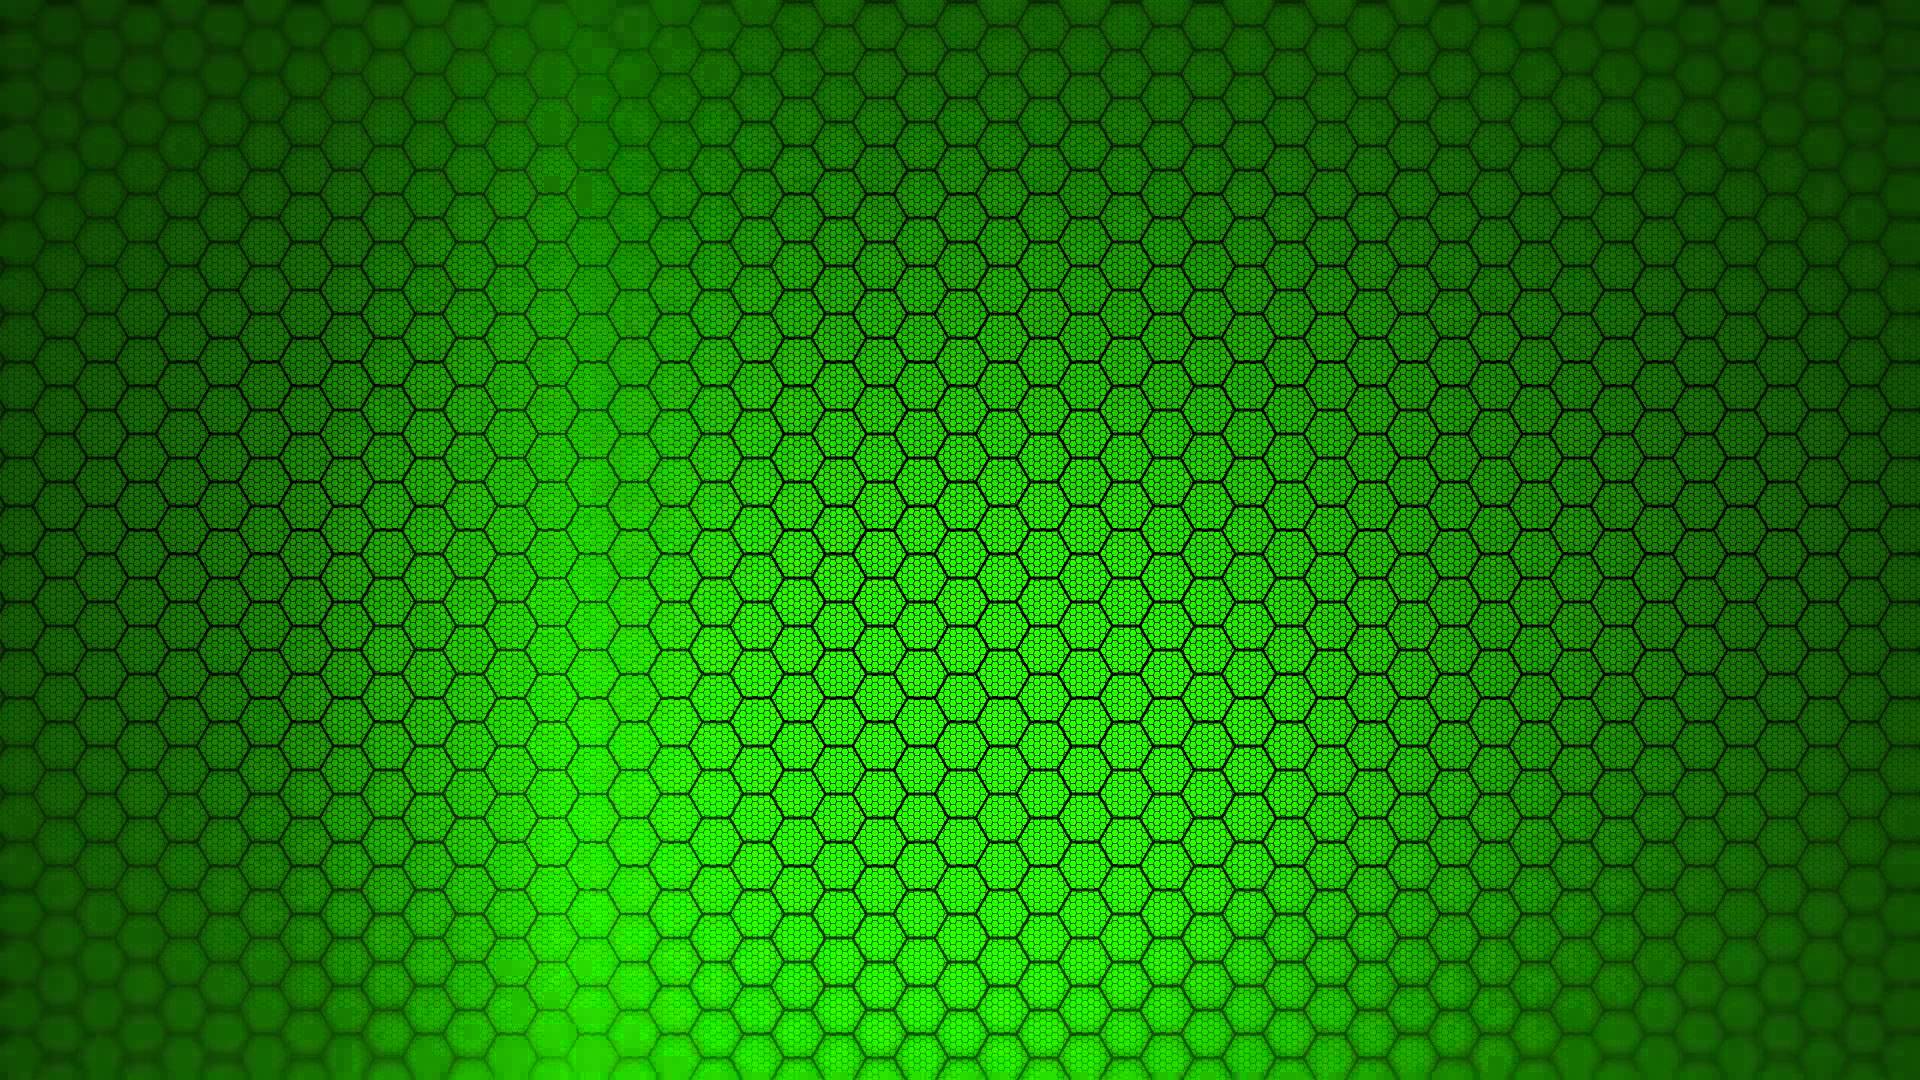 Bạn muốn tăng thêm tính sáng tạo cho những sản phẩm của mình bằng những hiệu ứng hexagon xanh lá cây đầy ấn tượng? Click để tải xuống ngay animation độc lạ này.